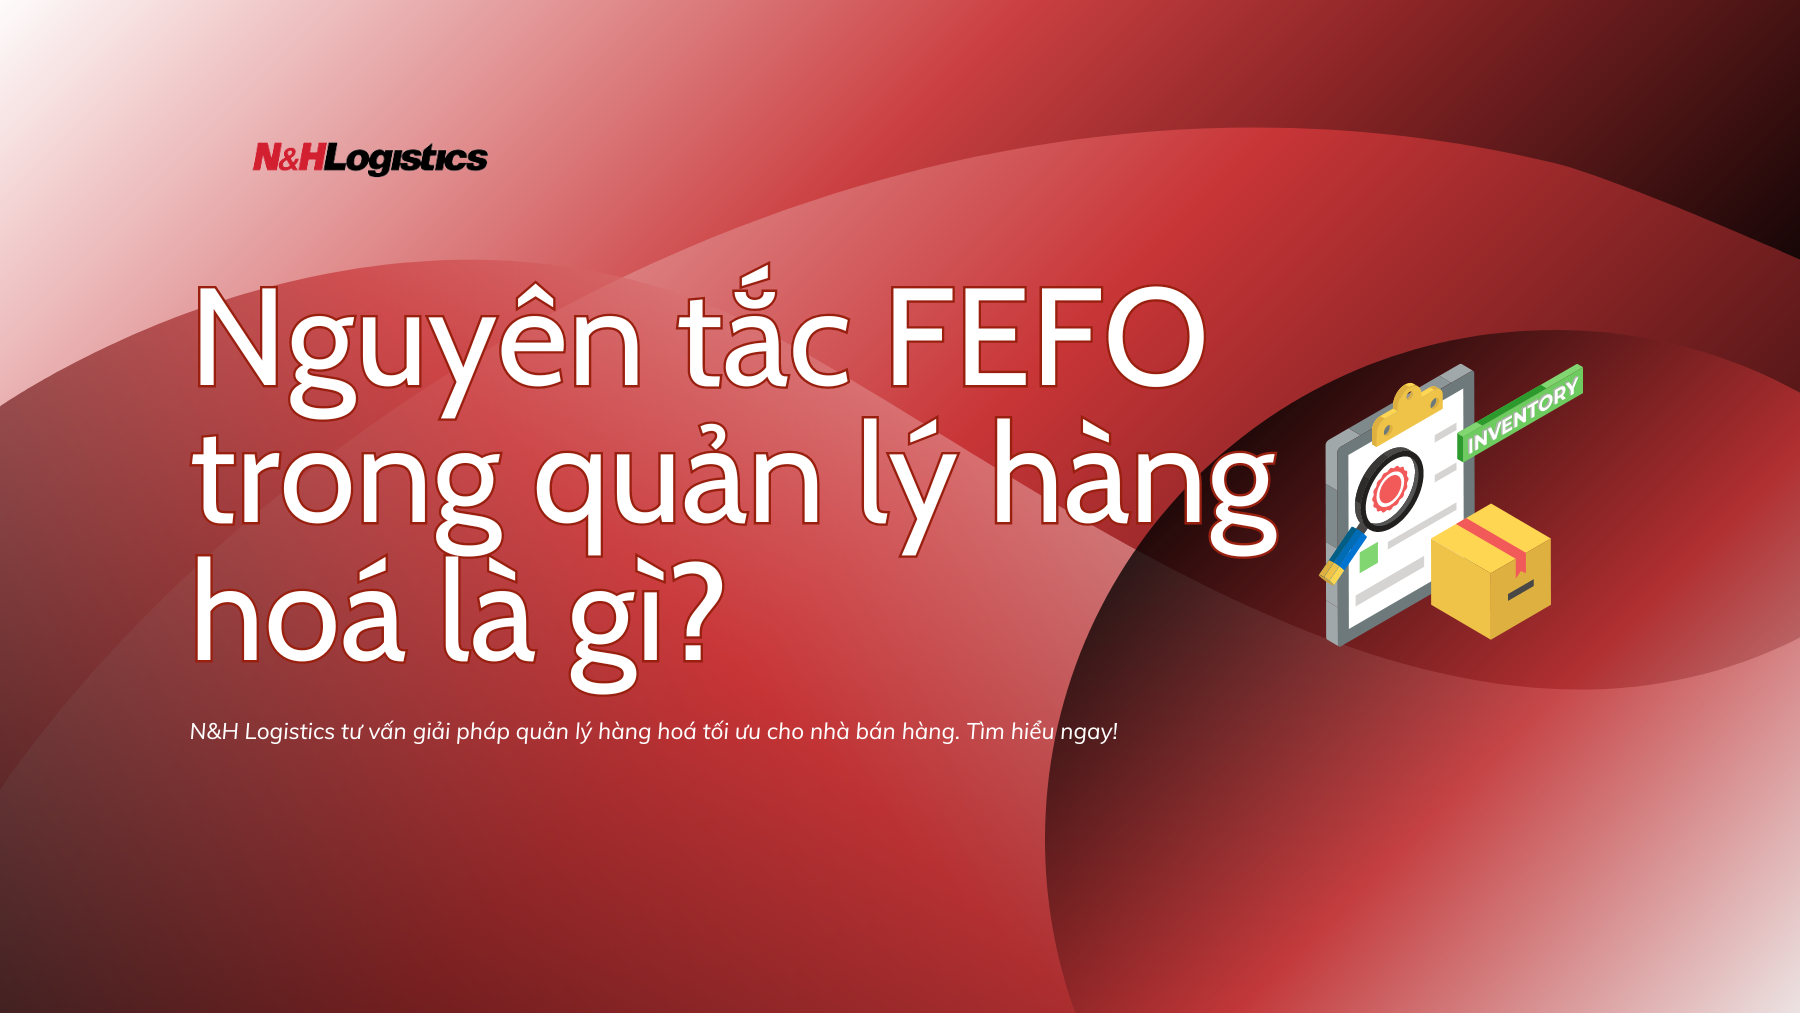 Nguyên tắc FEFO trong quản lý hàng hoá là gì?